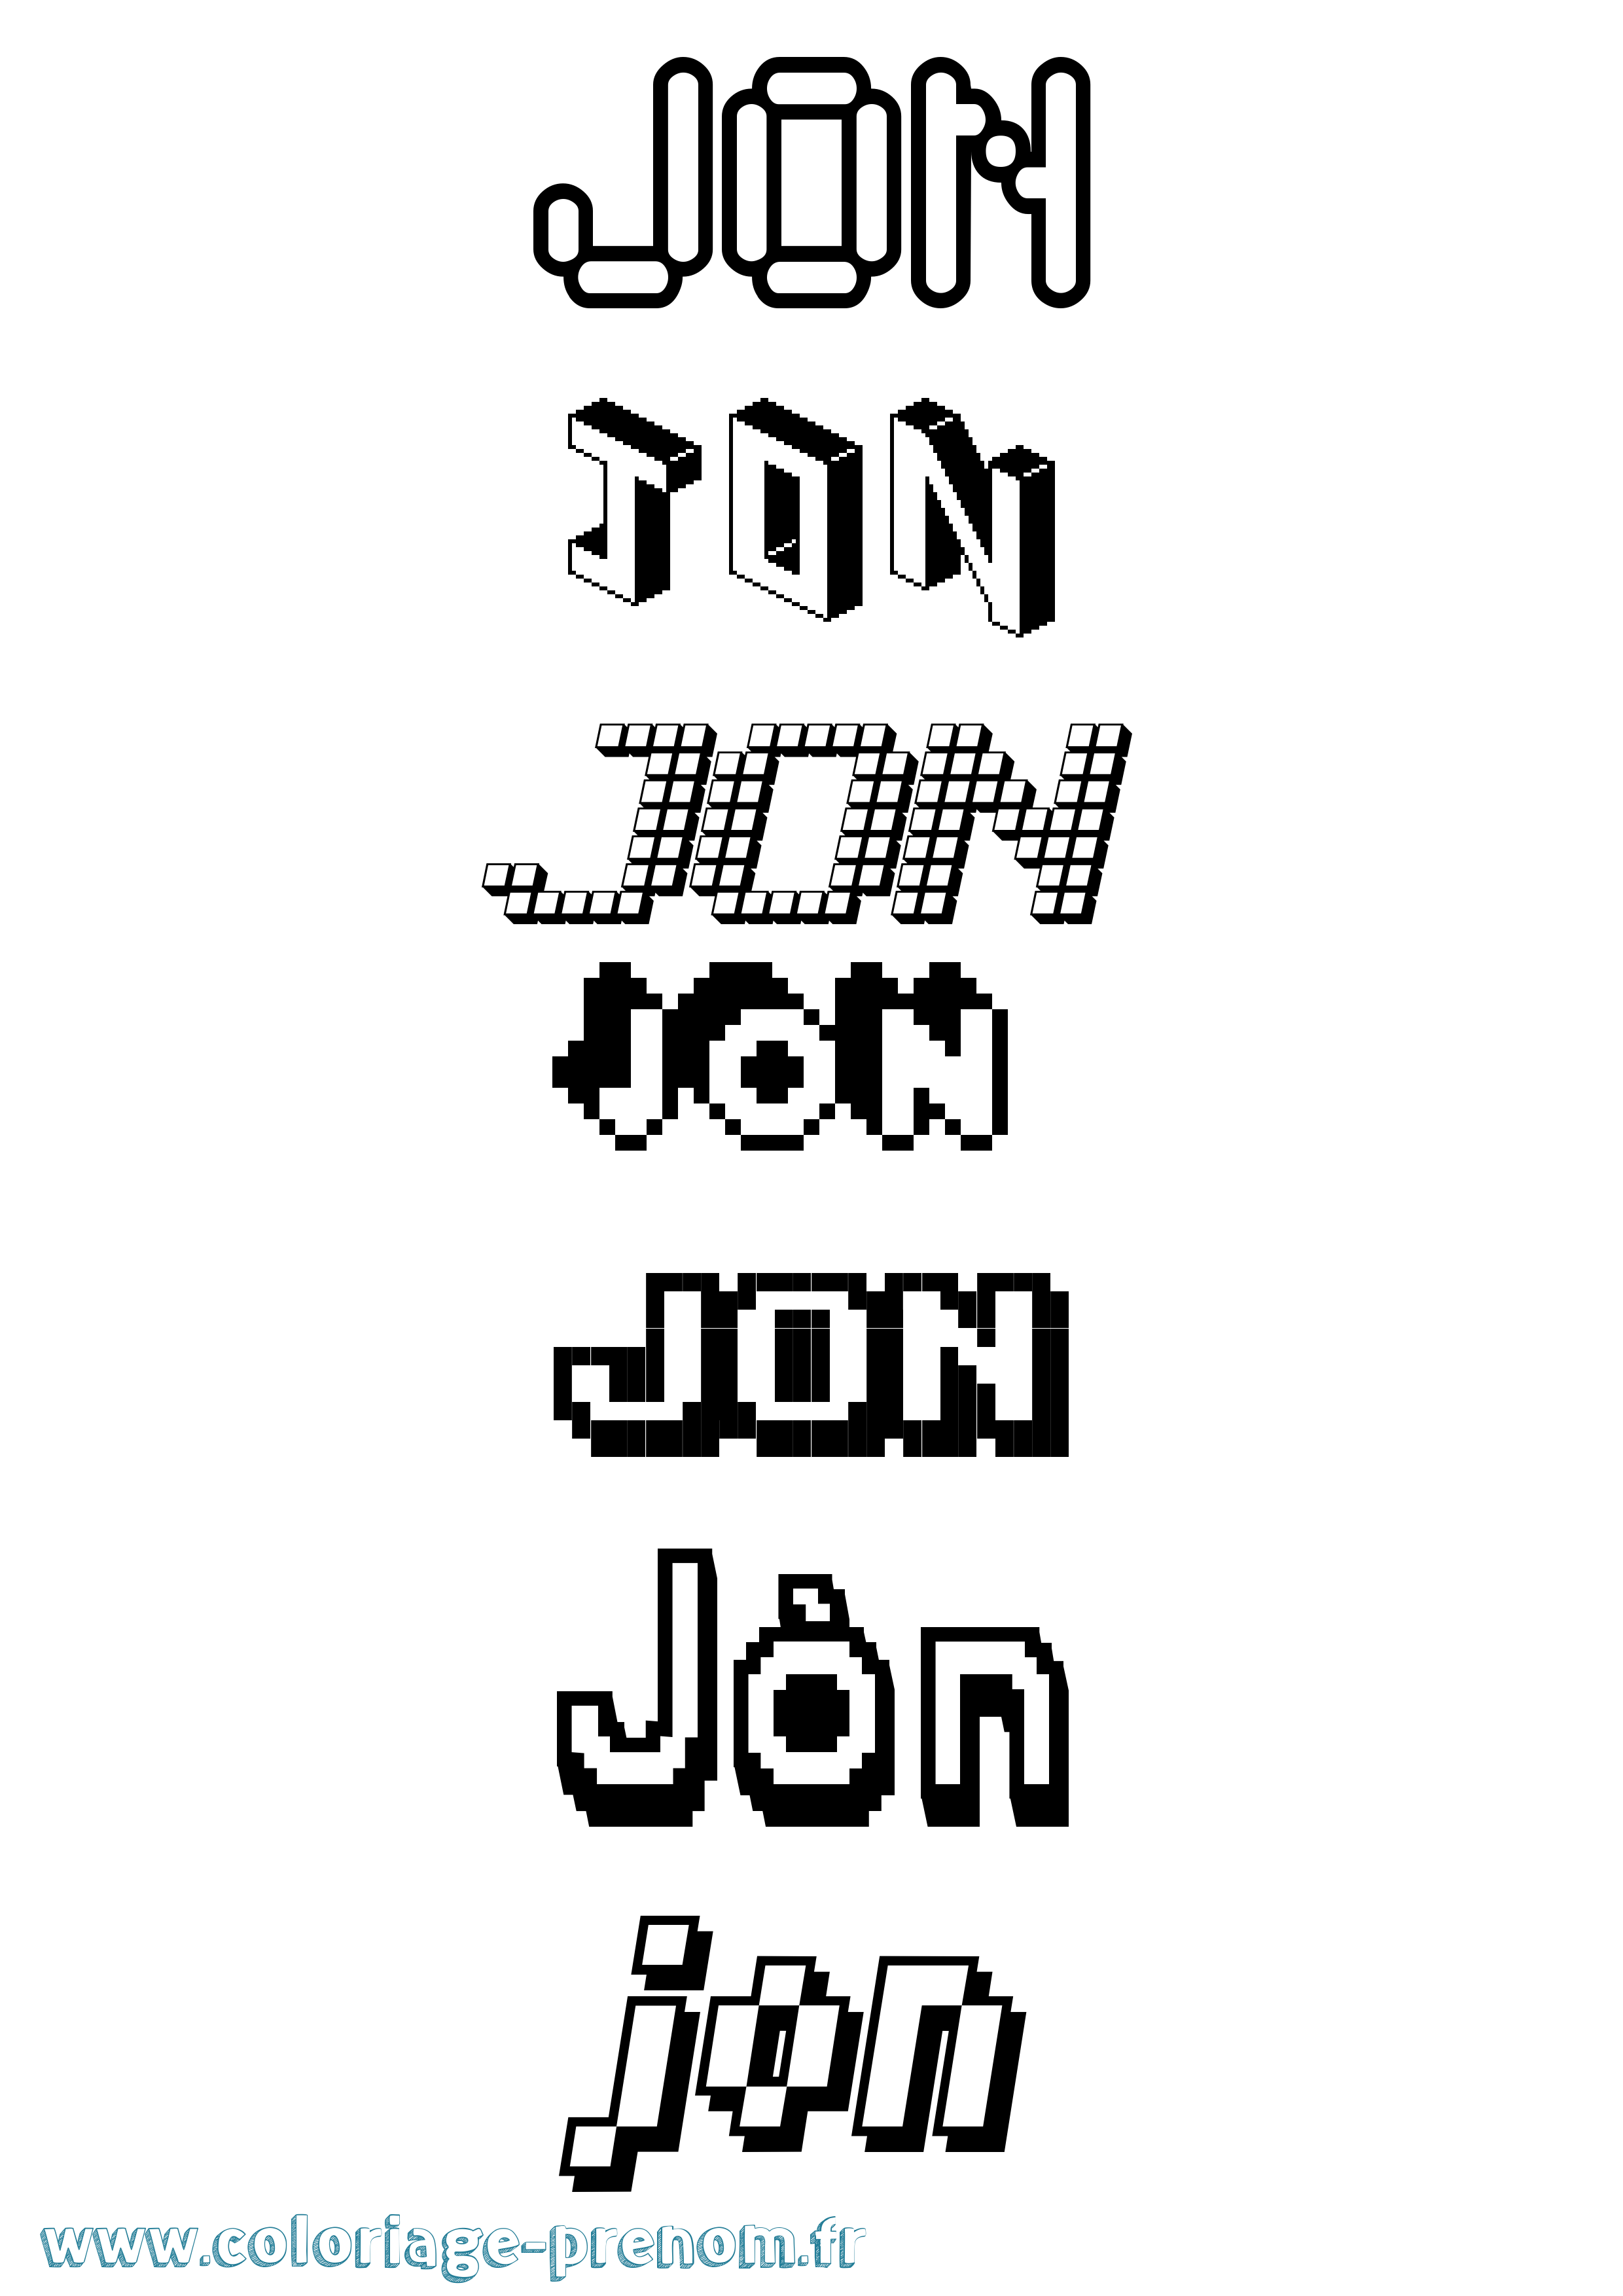 Coloriage prénom Jón Pixel